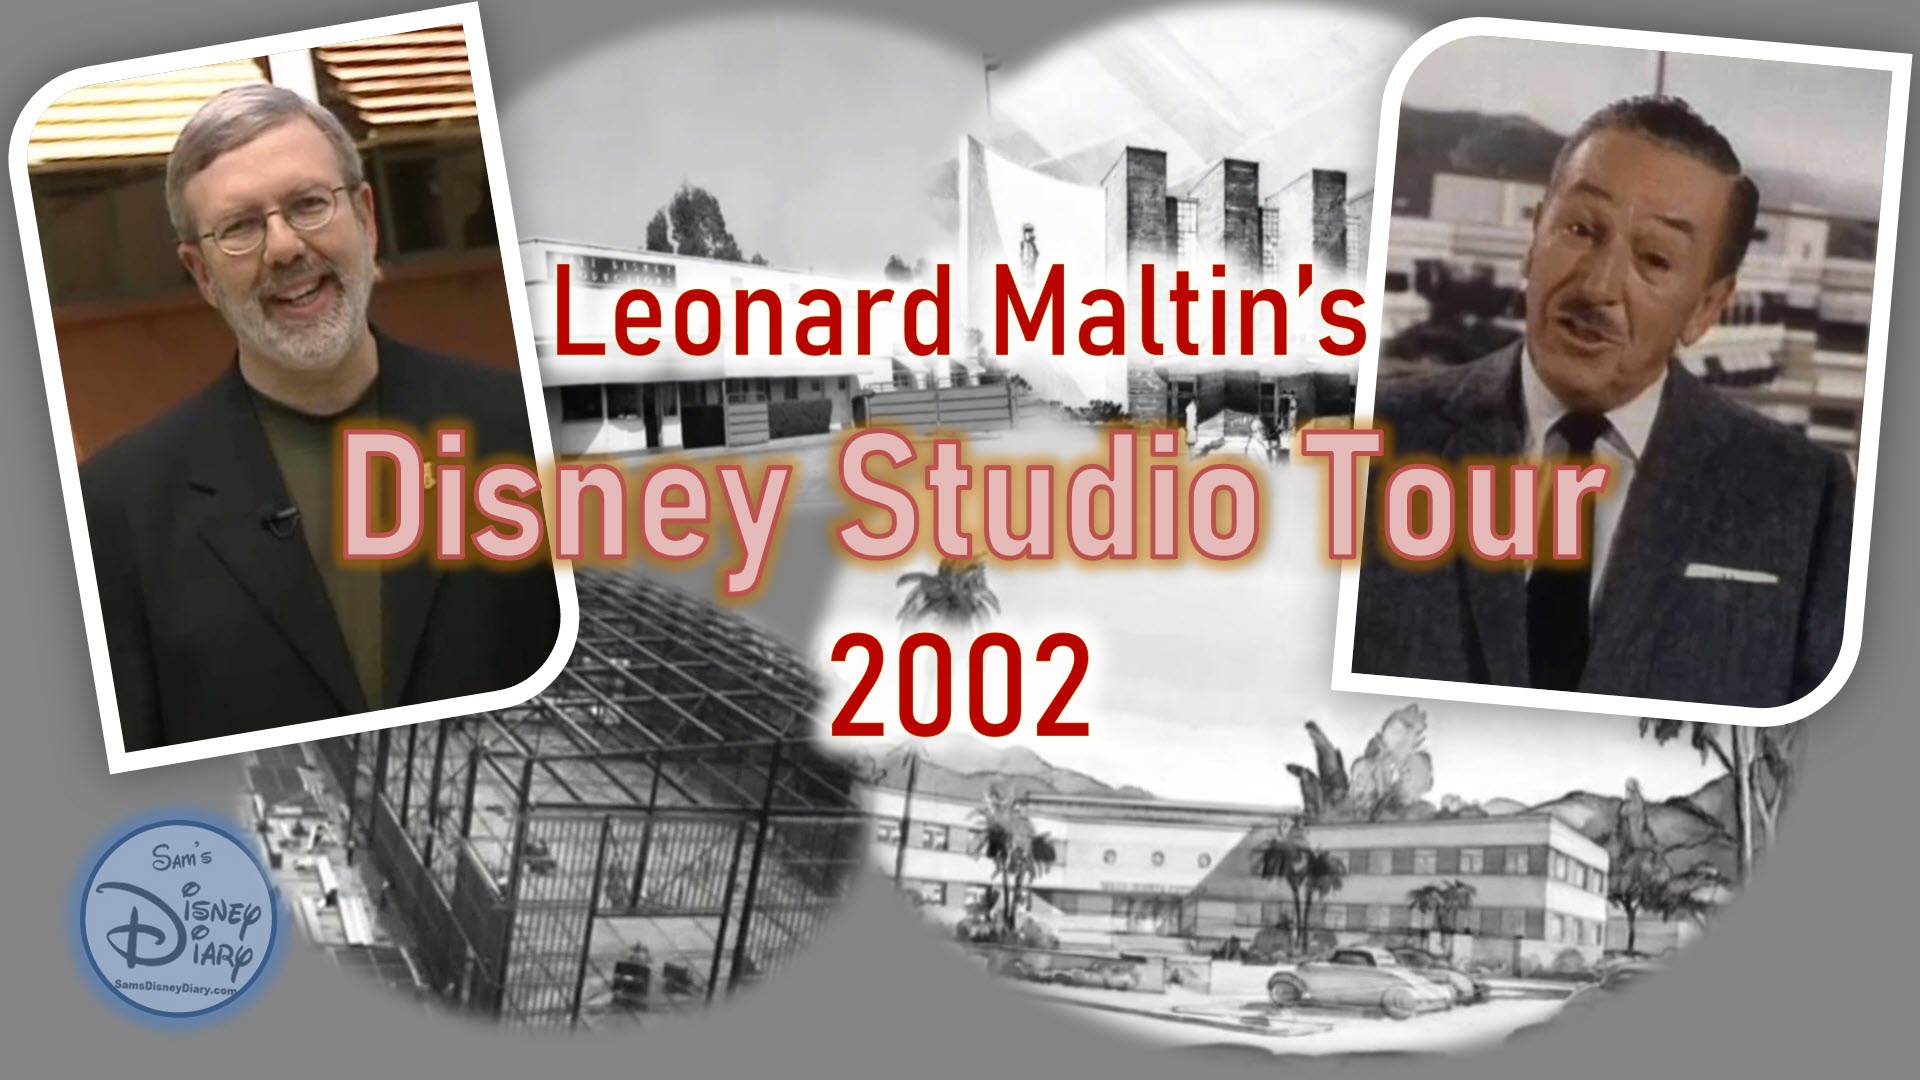 Disney Studio Tour with Leonard Maltin (2002)